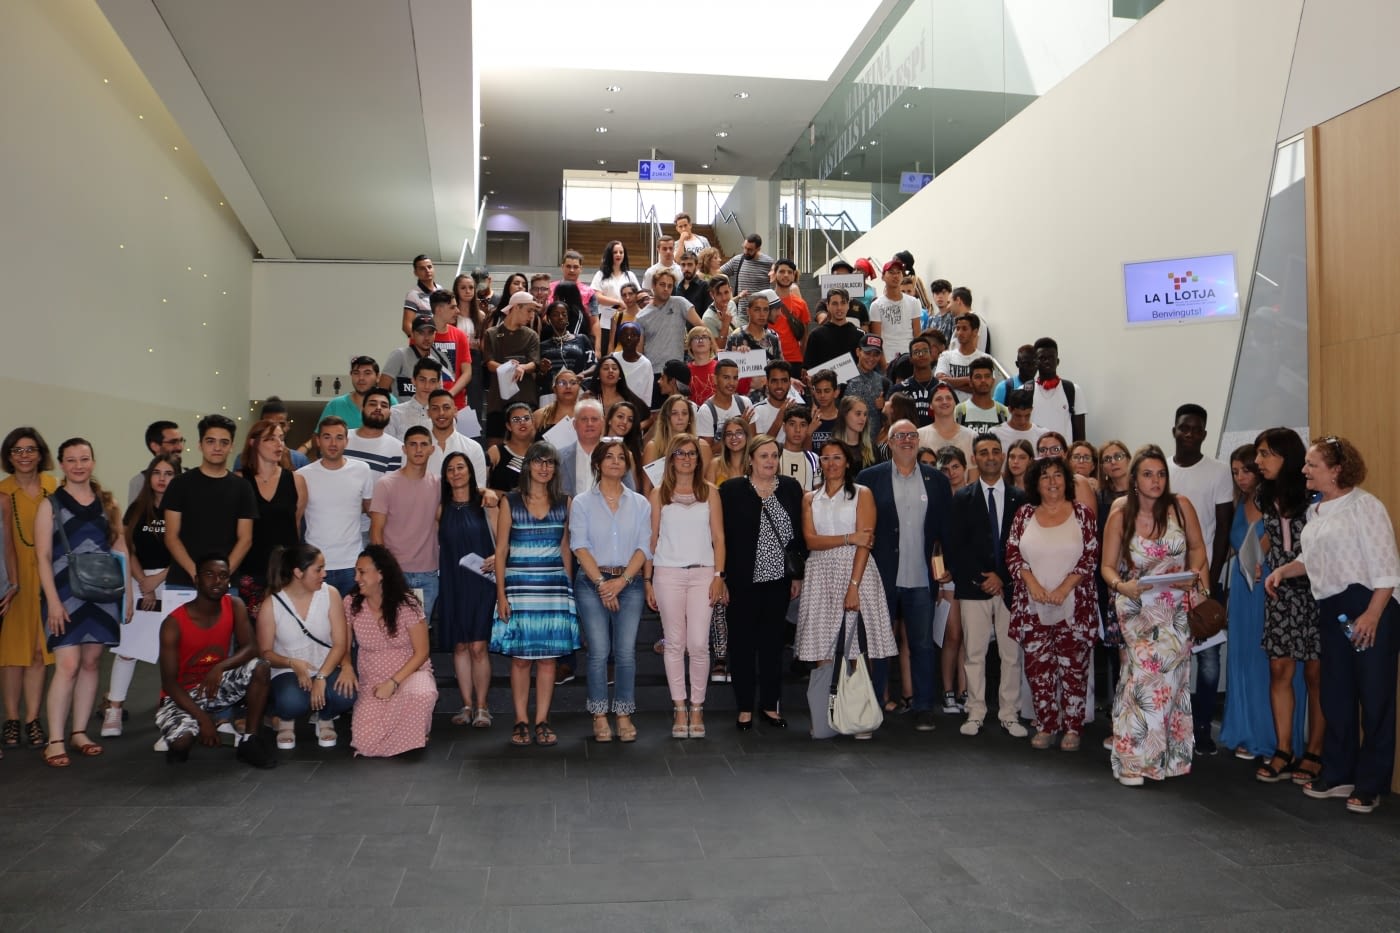 Lliurament de diplomes als joves del Programa Noves Oportunitats Lleida, entre ells un centenar de menors estrangers no acompanyats (MENAS)